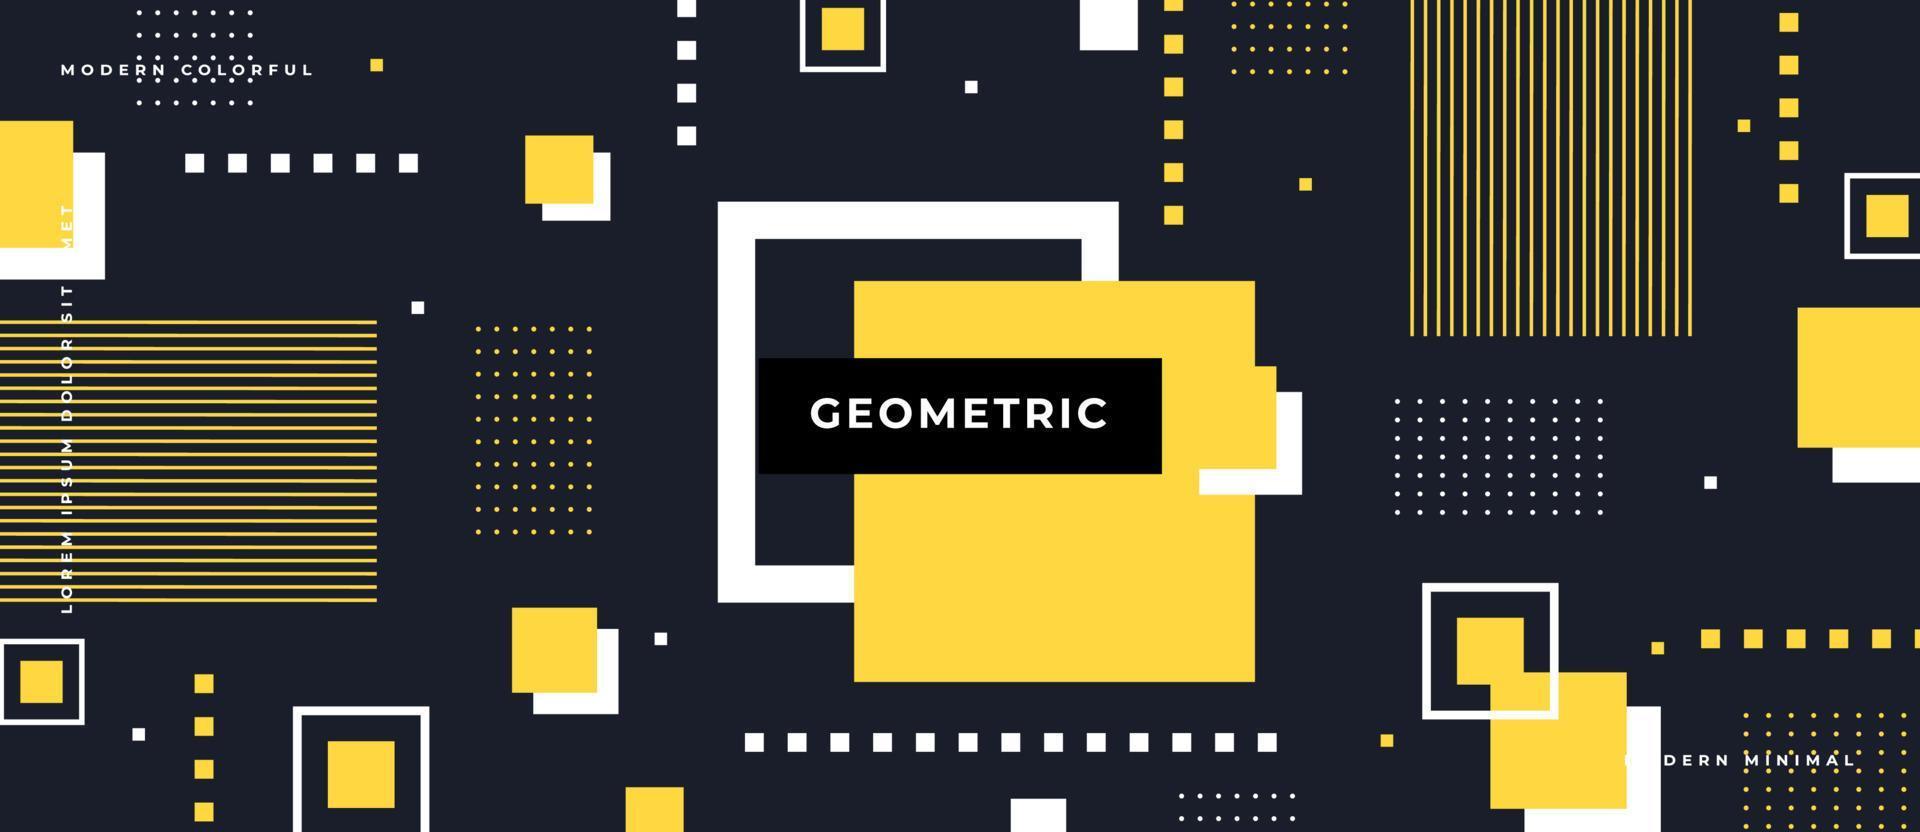 composición y formas geométricas planas de bauhaus o memphis. elementos retro, patrón geométrico sobre fondo gris. vector